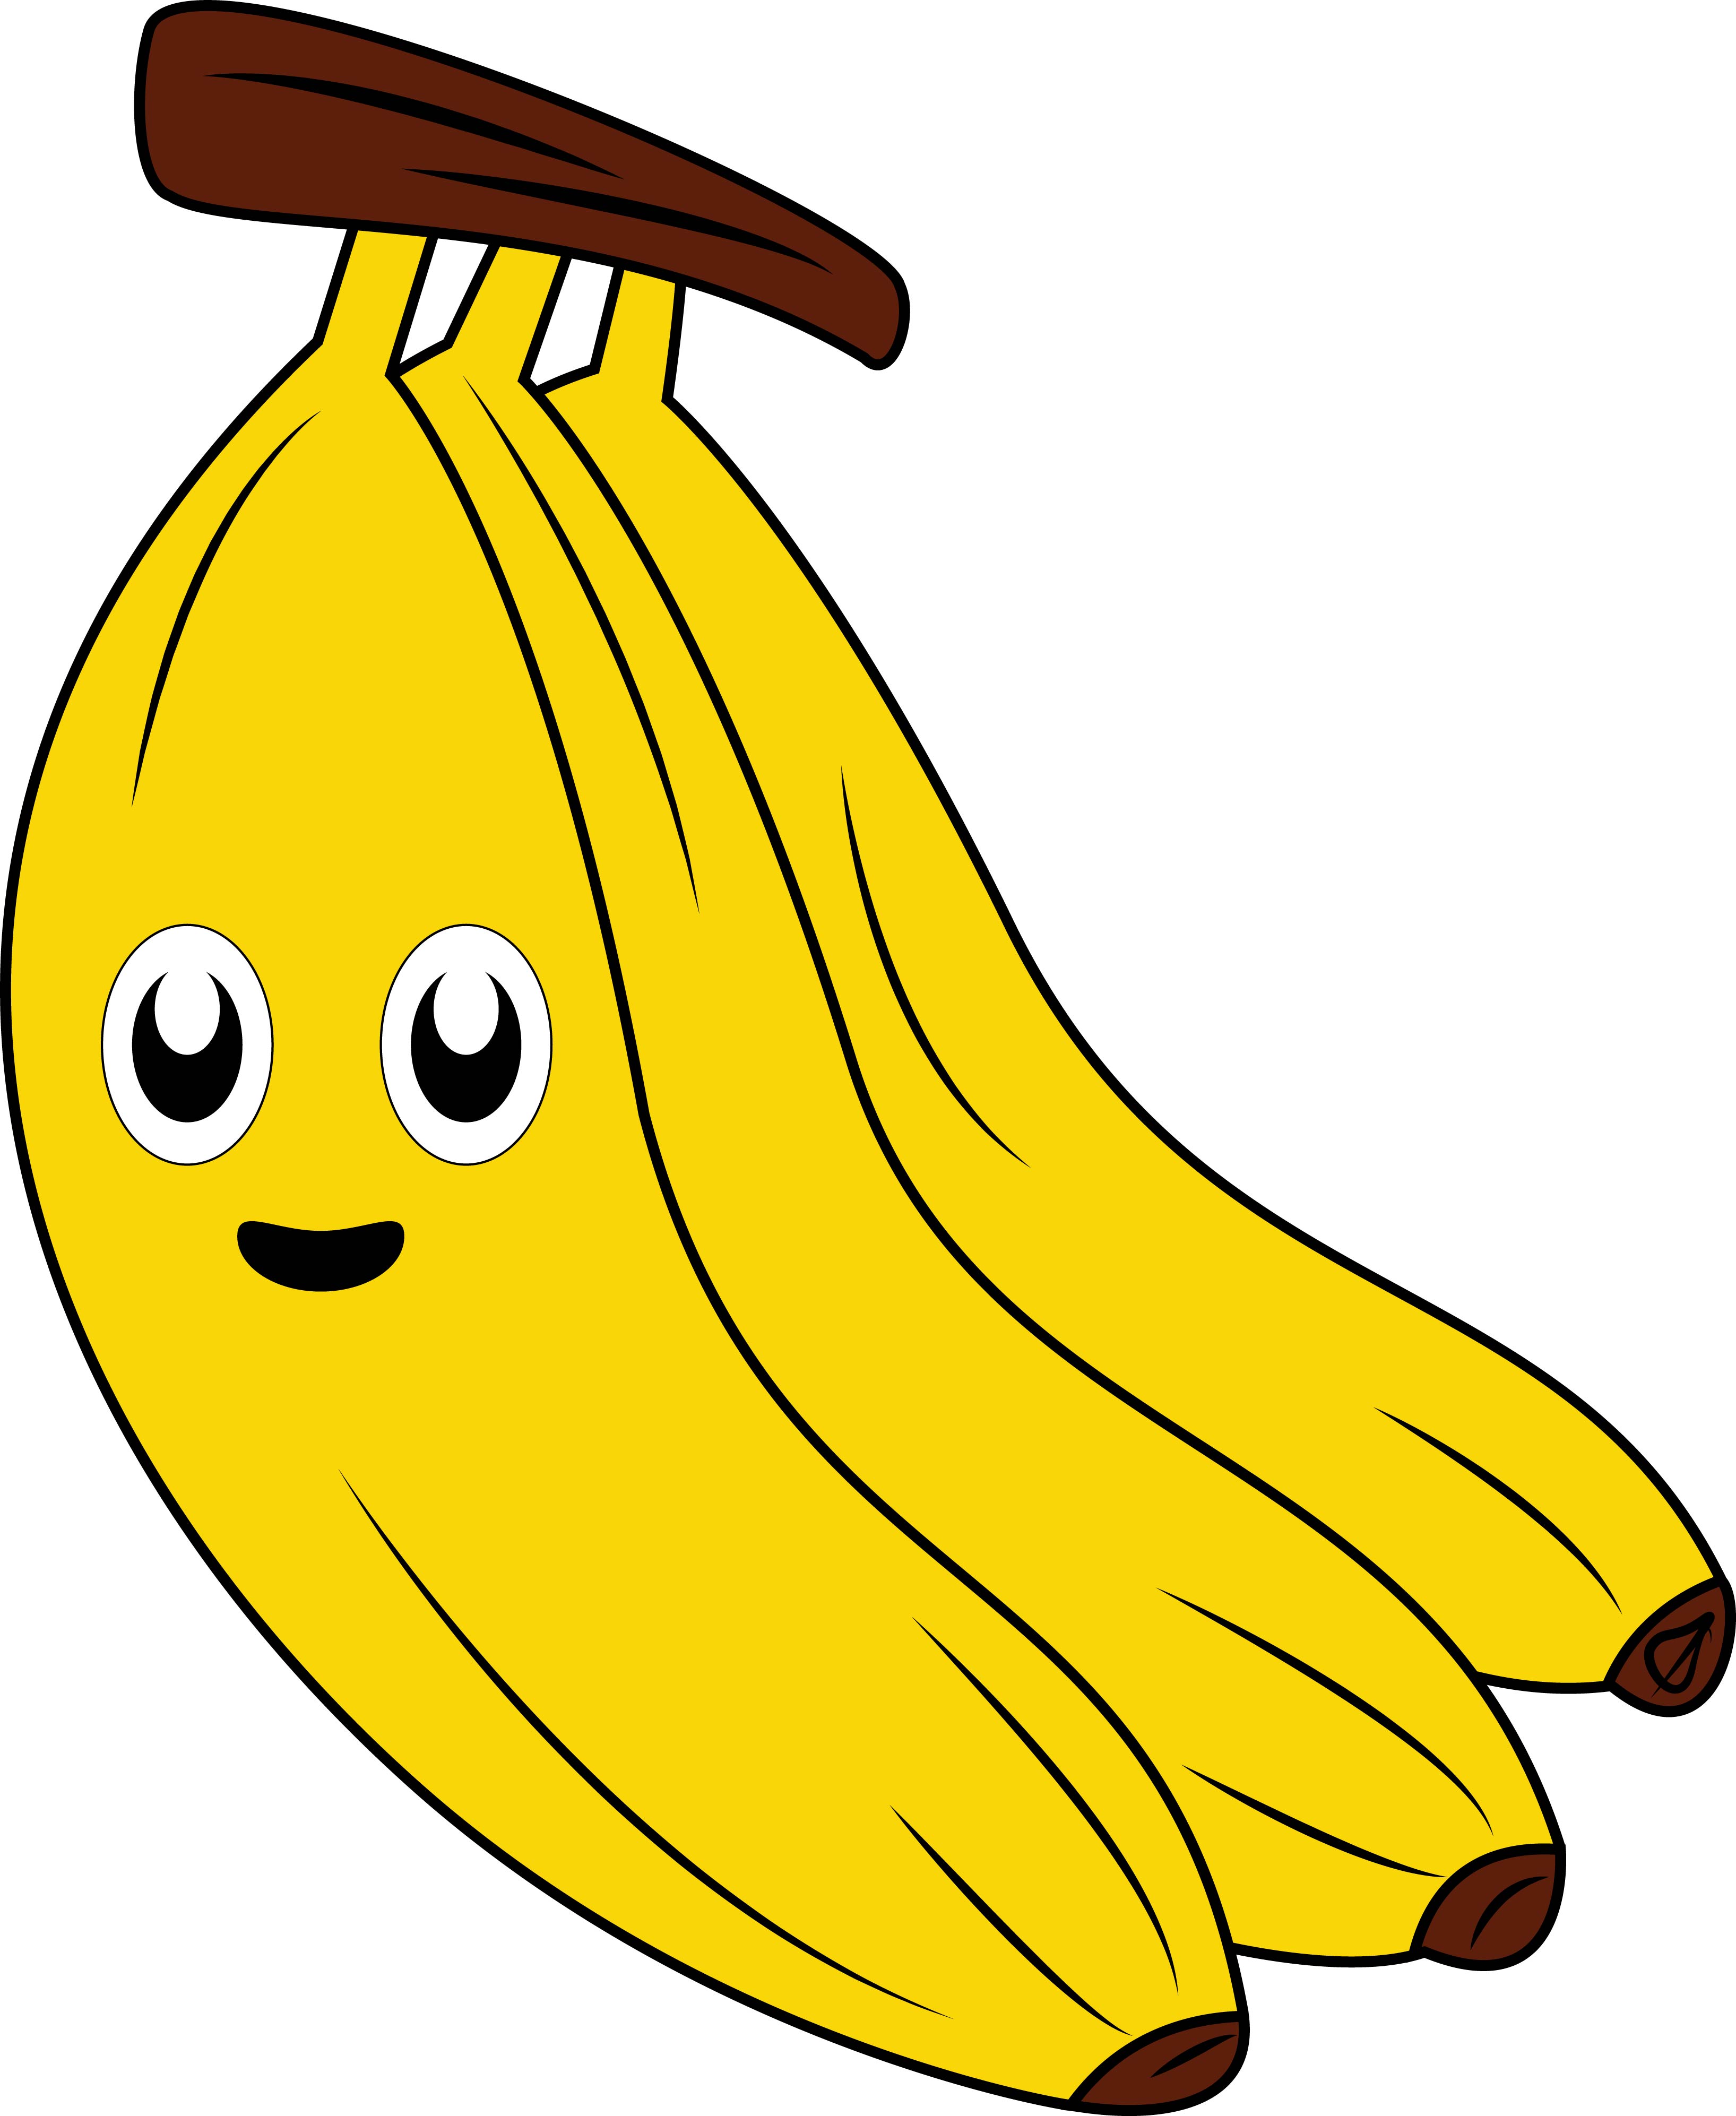 Раскраска банан с лицом и большими глазами формата А4 в высоком качестве